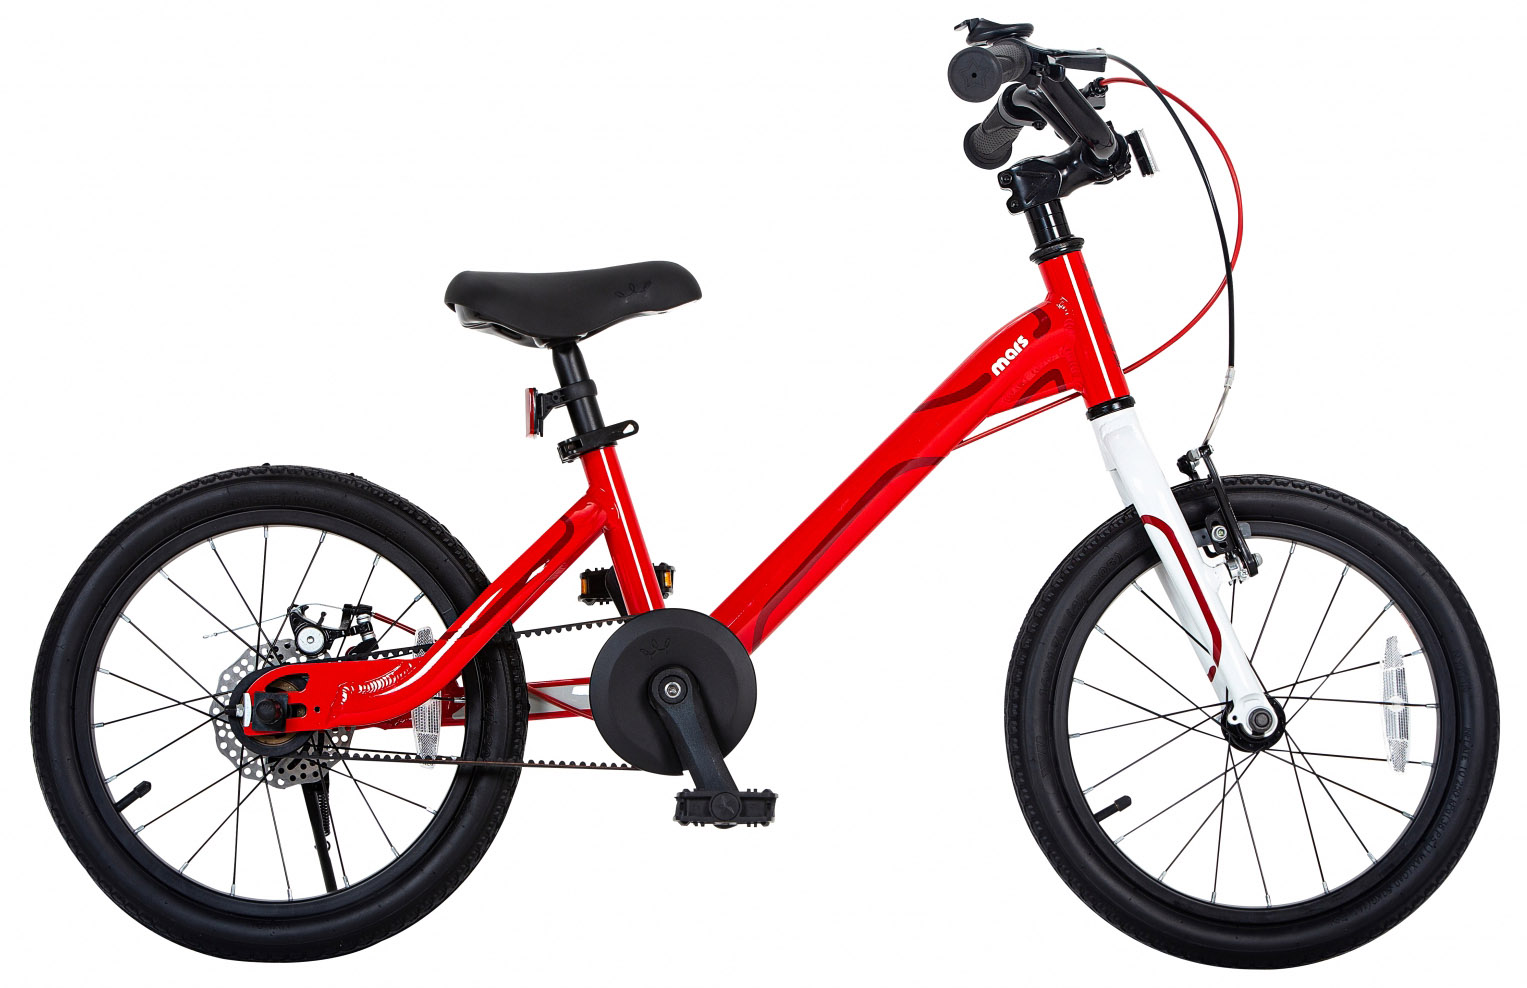  Отзывы о Детском велосипеде Royal Baby Mars 16 2020